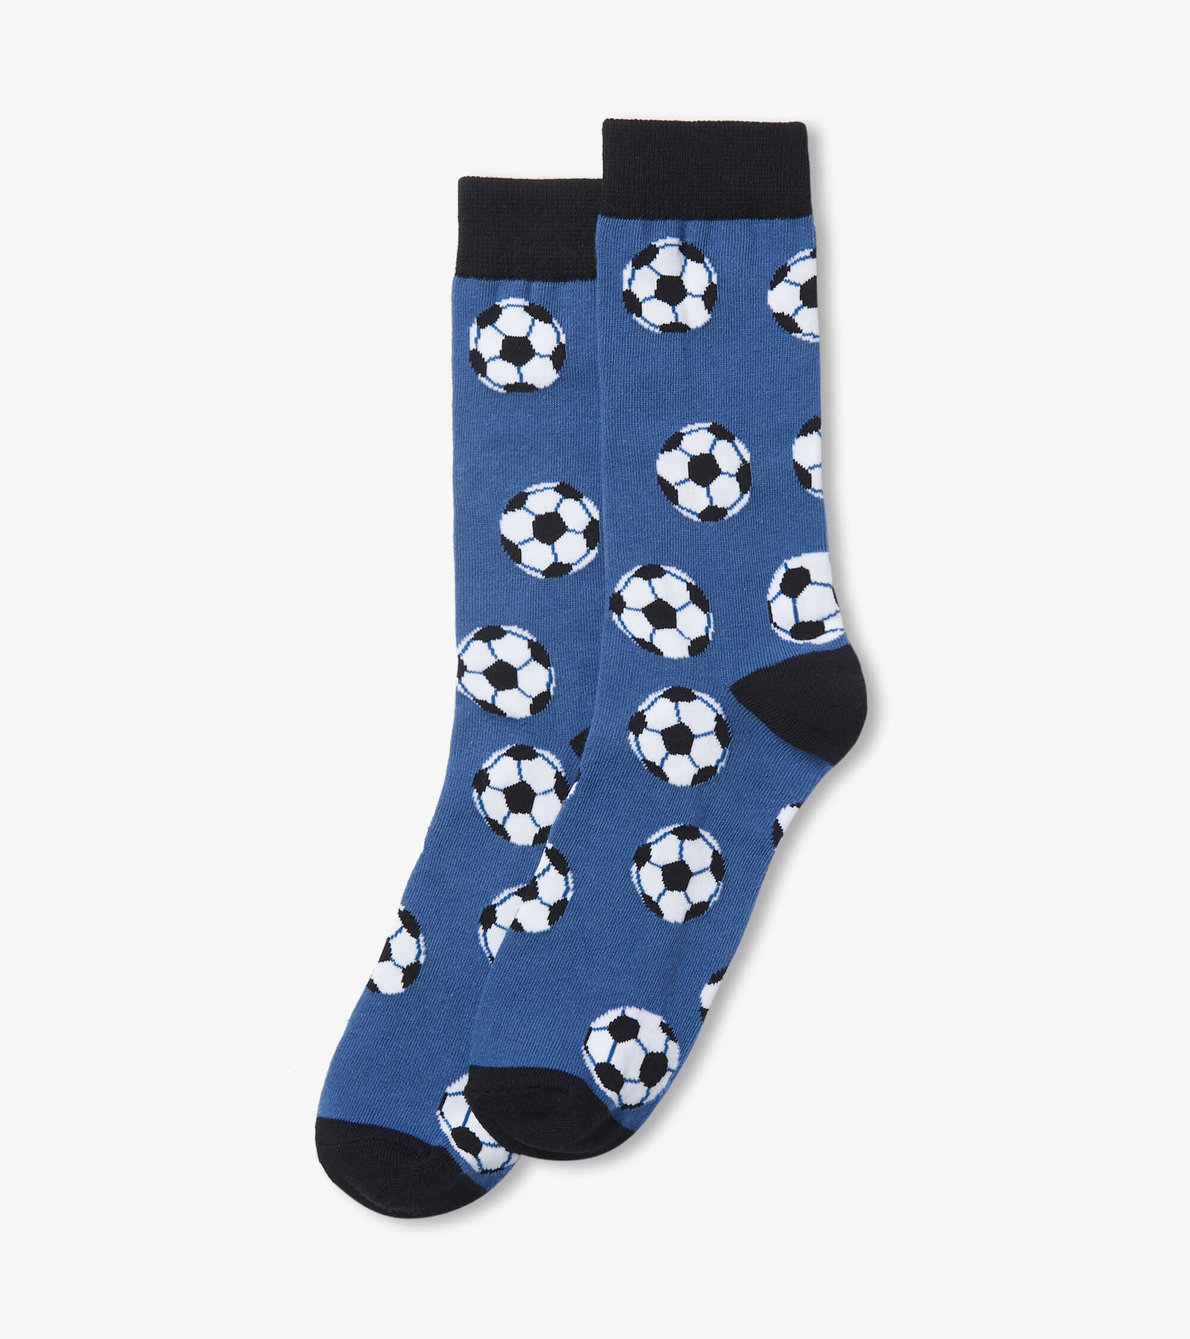 View larger image of Soccer Balls Men's Crew Socks